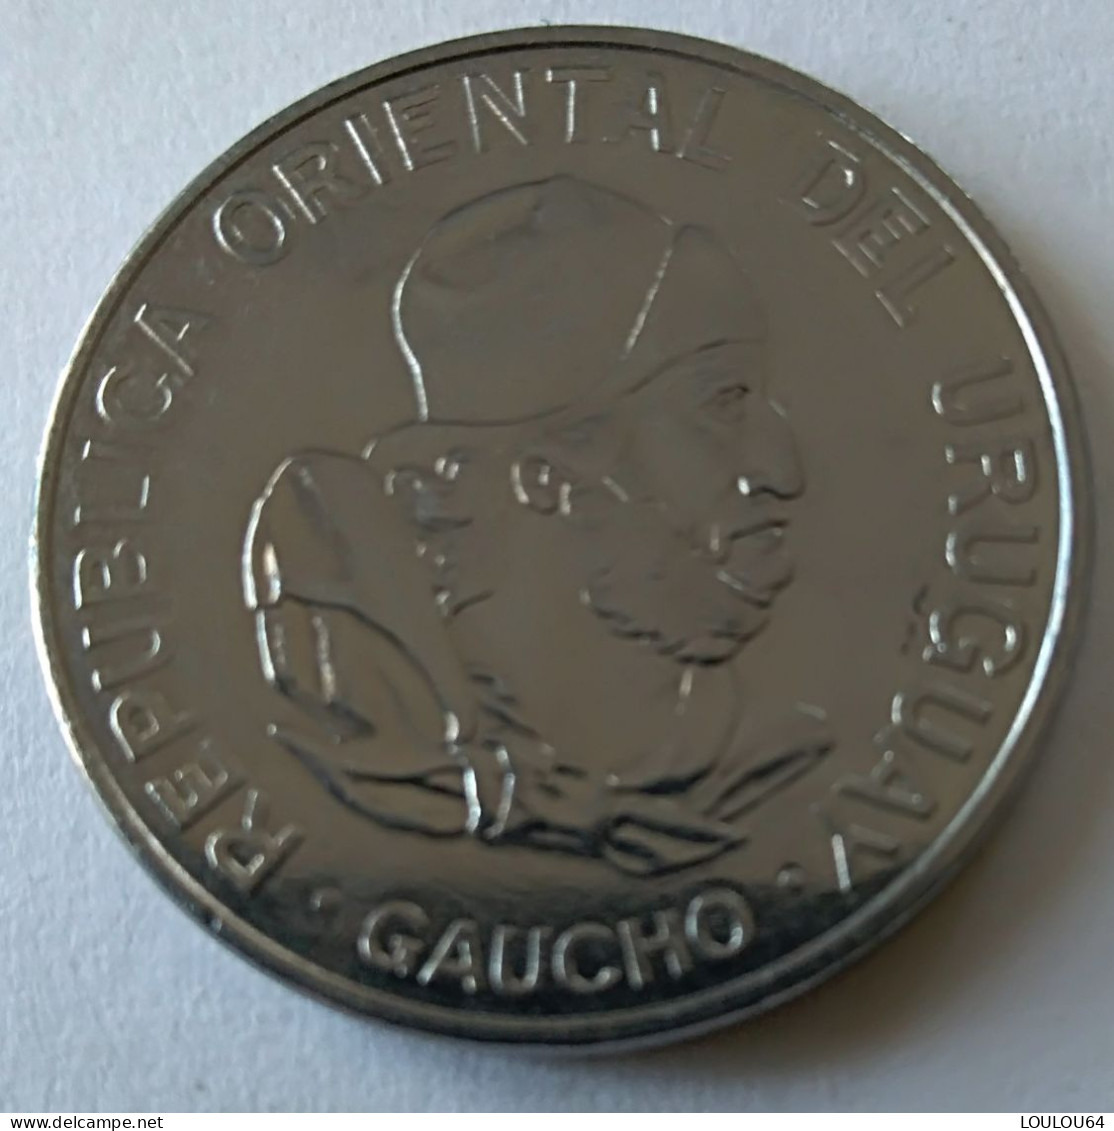 URUGUAY - 100 Pesos 1989 - GAUCHO - - Uruguay